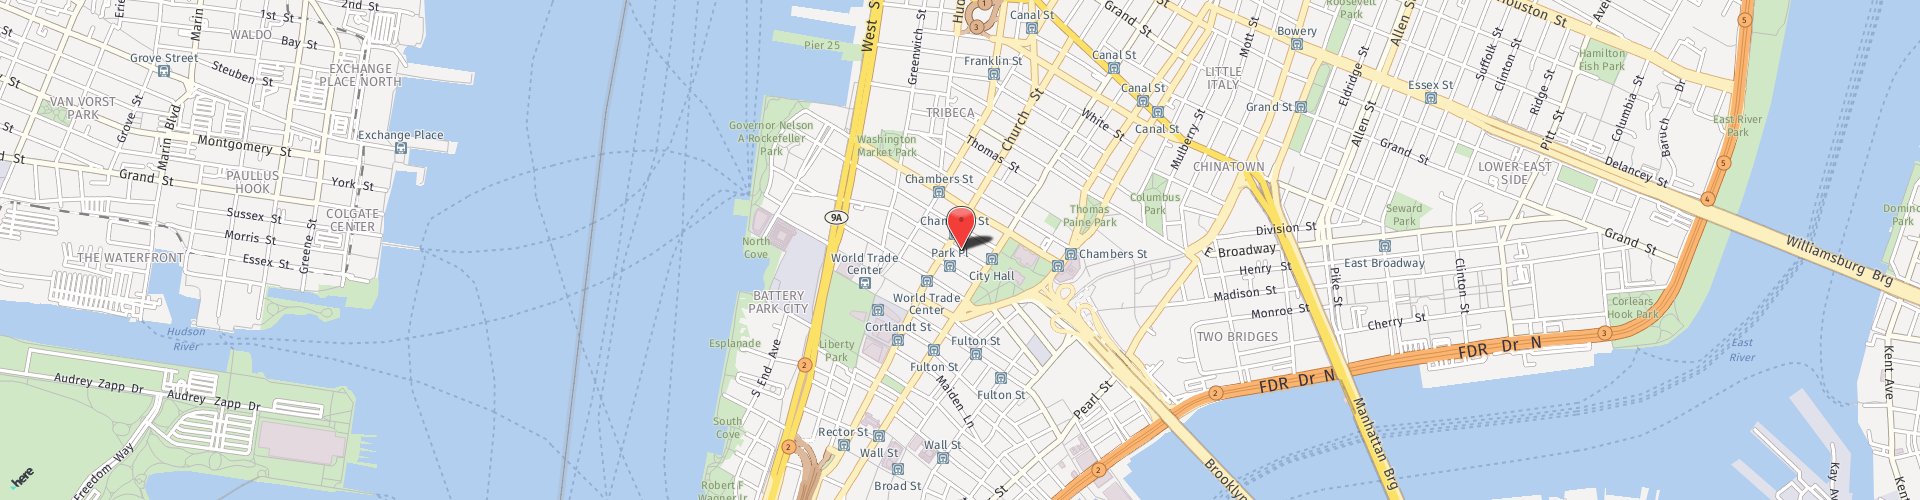 Location Map: 21 Murray Street New York, NY 10007